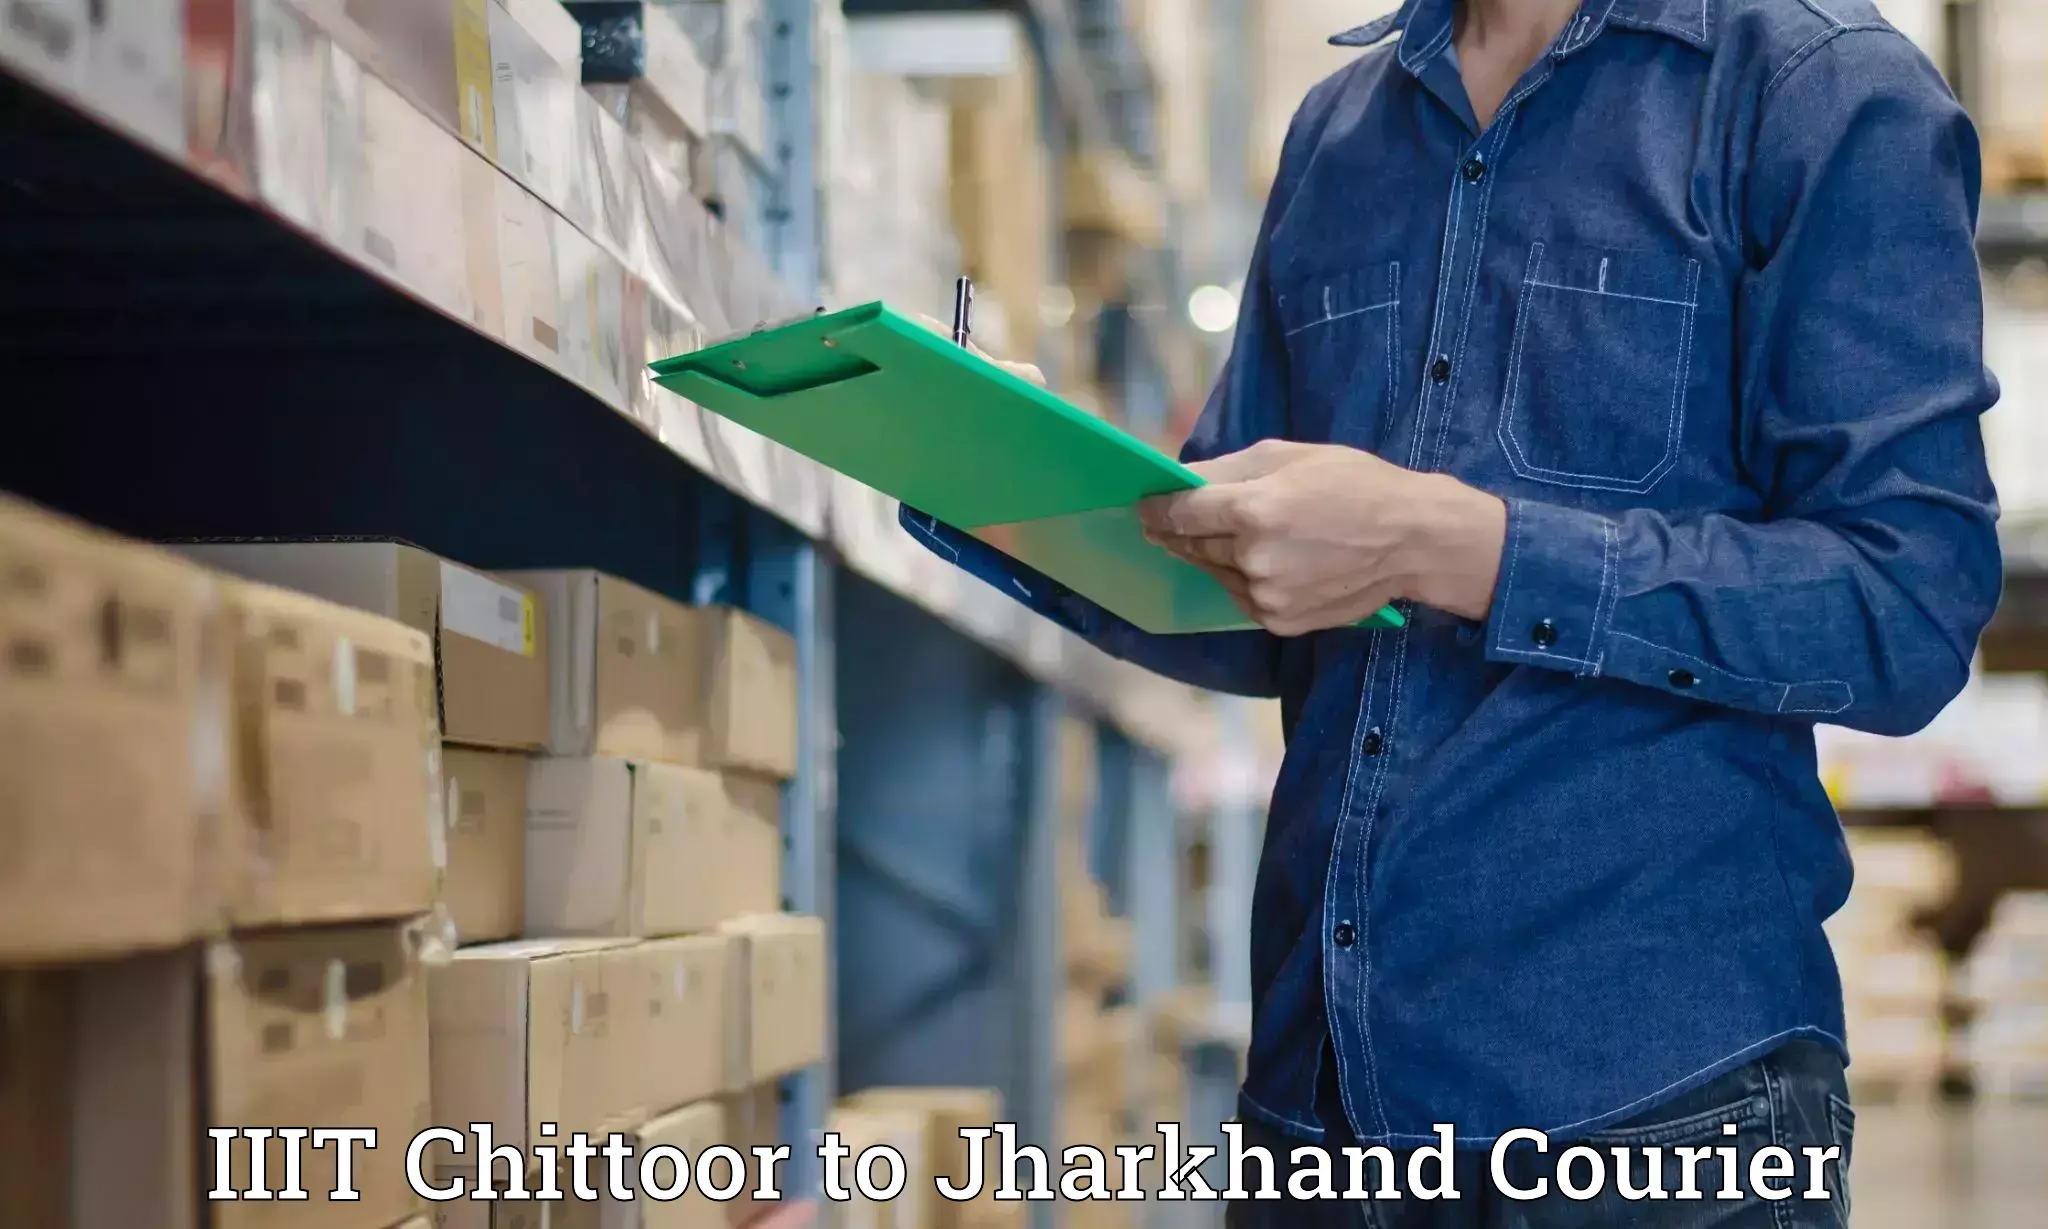 Quick courier services IIIT Chittoor to Chandankiyari